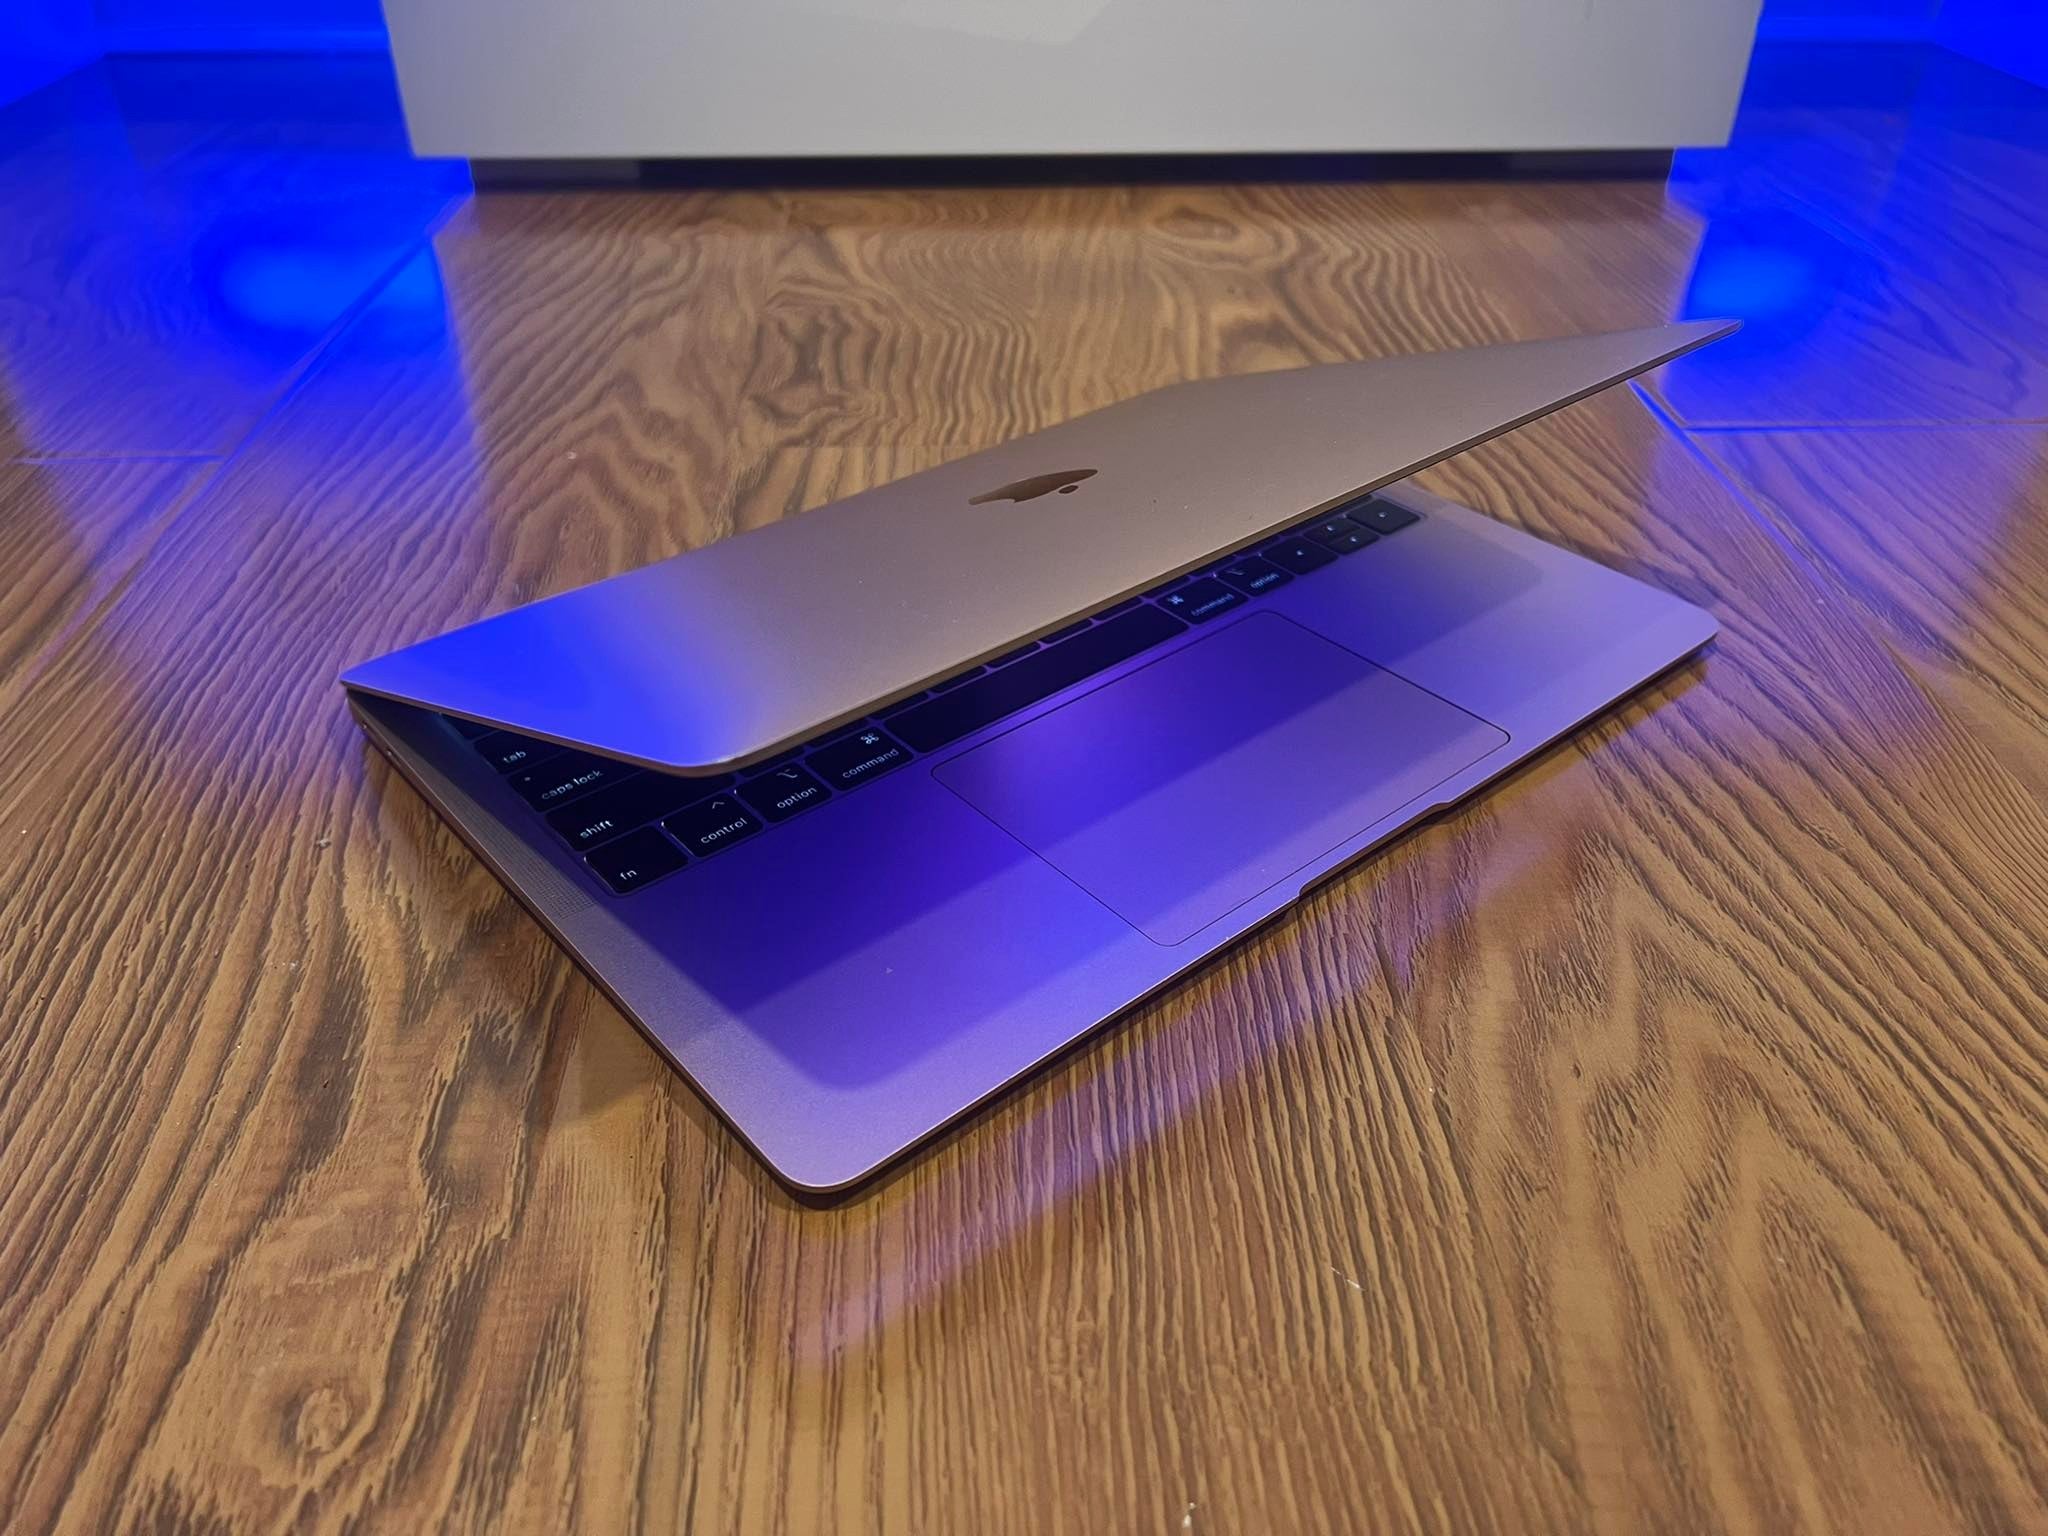 MacBook Air (Retina, 13-inch, 2020) Intel i5, 8GB RAM, 256GB (Premium Grade) A2179